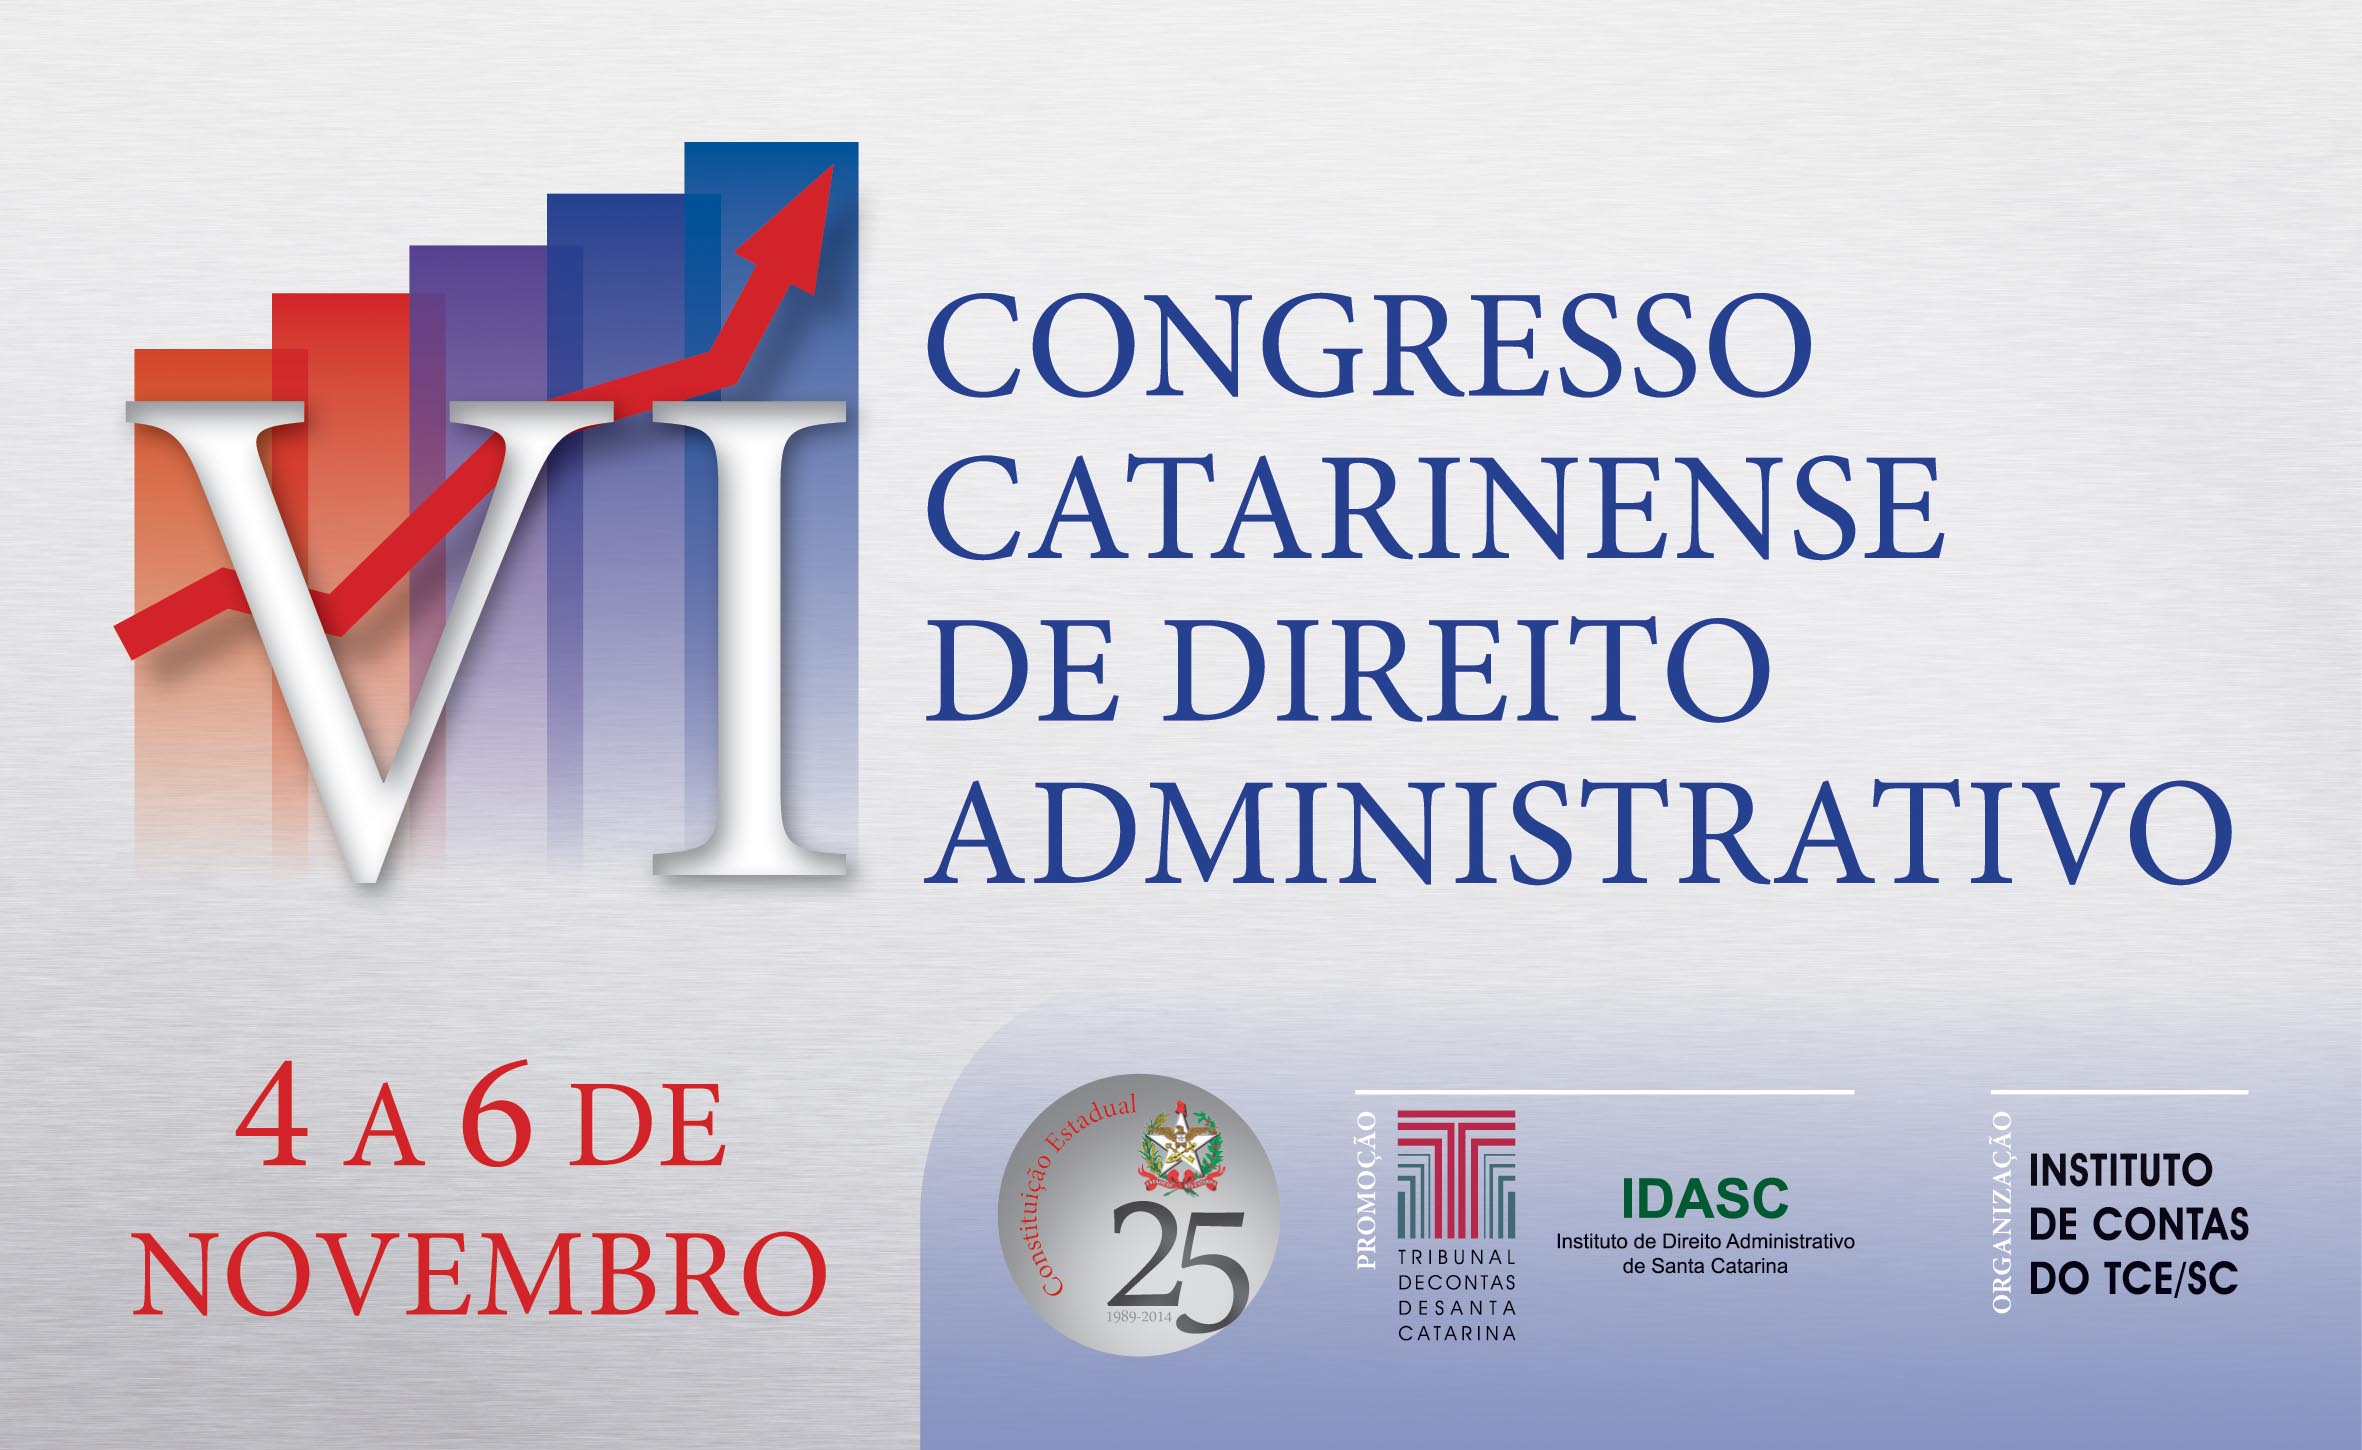 Abertas inscrições para VI Congresso Catarinense de Direito Administrativo no TCE/SC